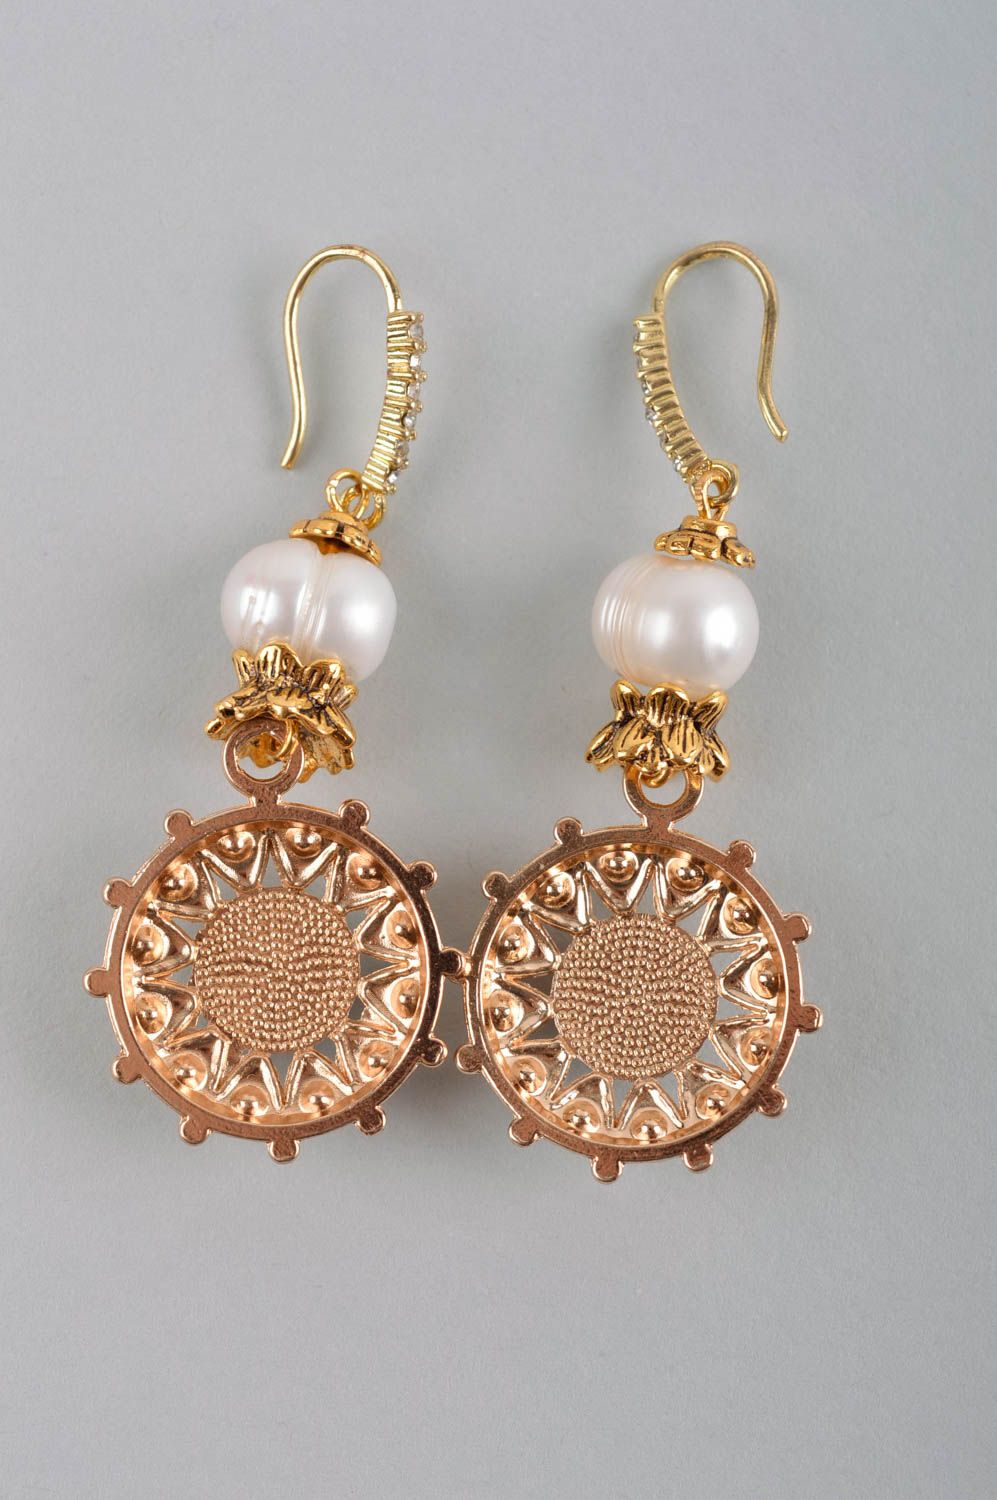 Handmade earrings pearl jewelry dangling earrings fashion accessories for women photo 5